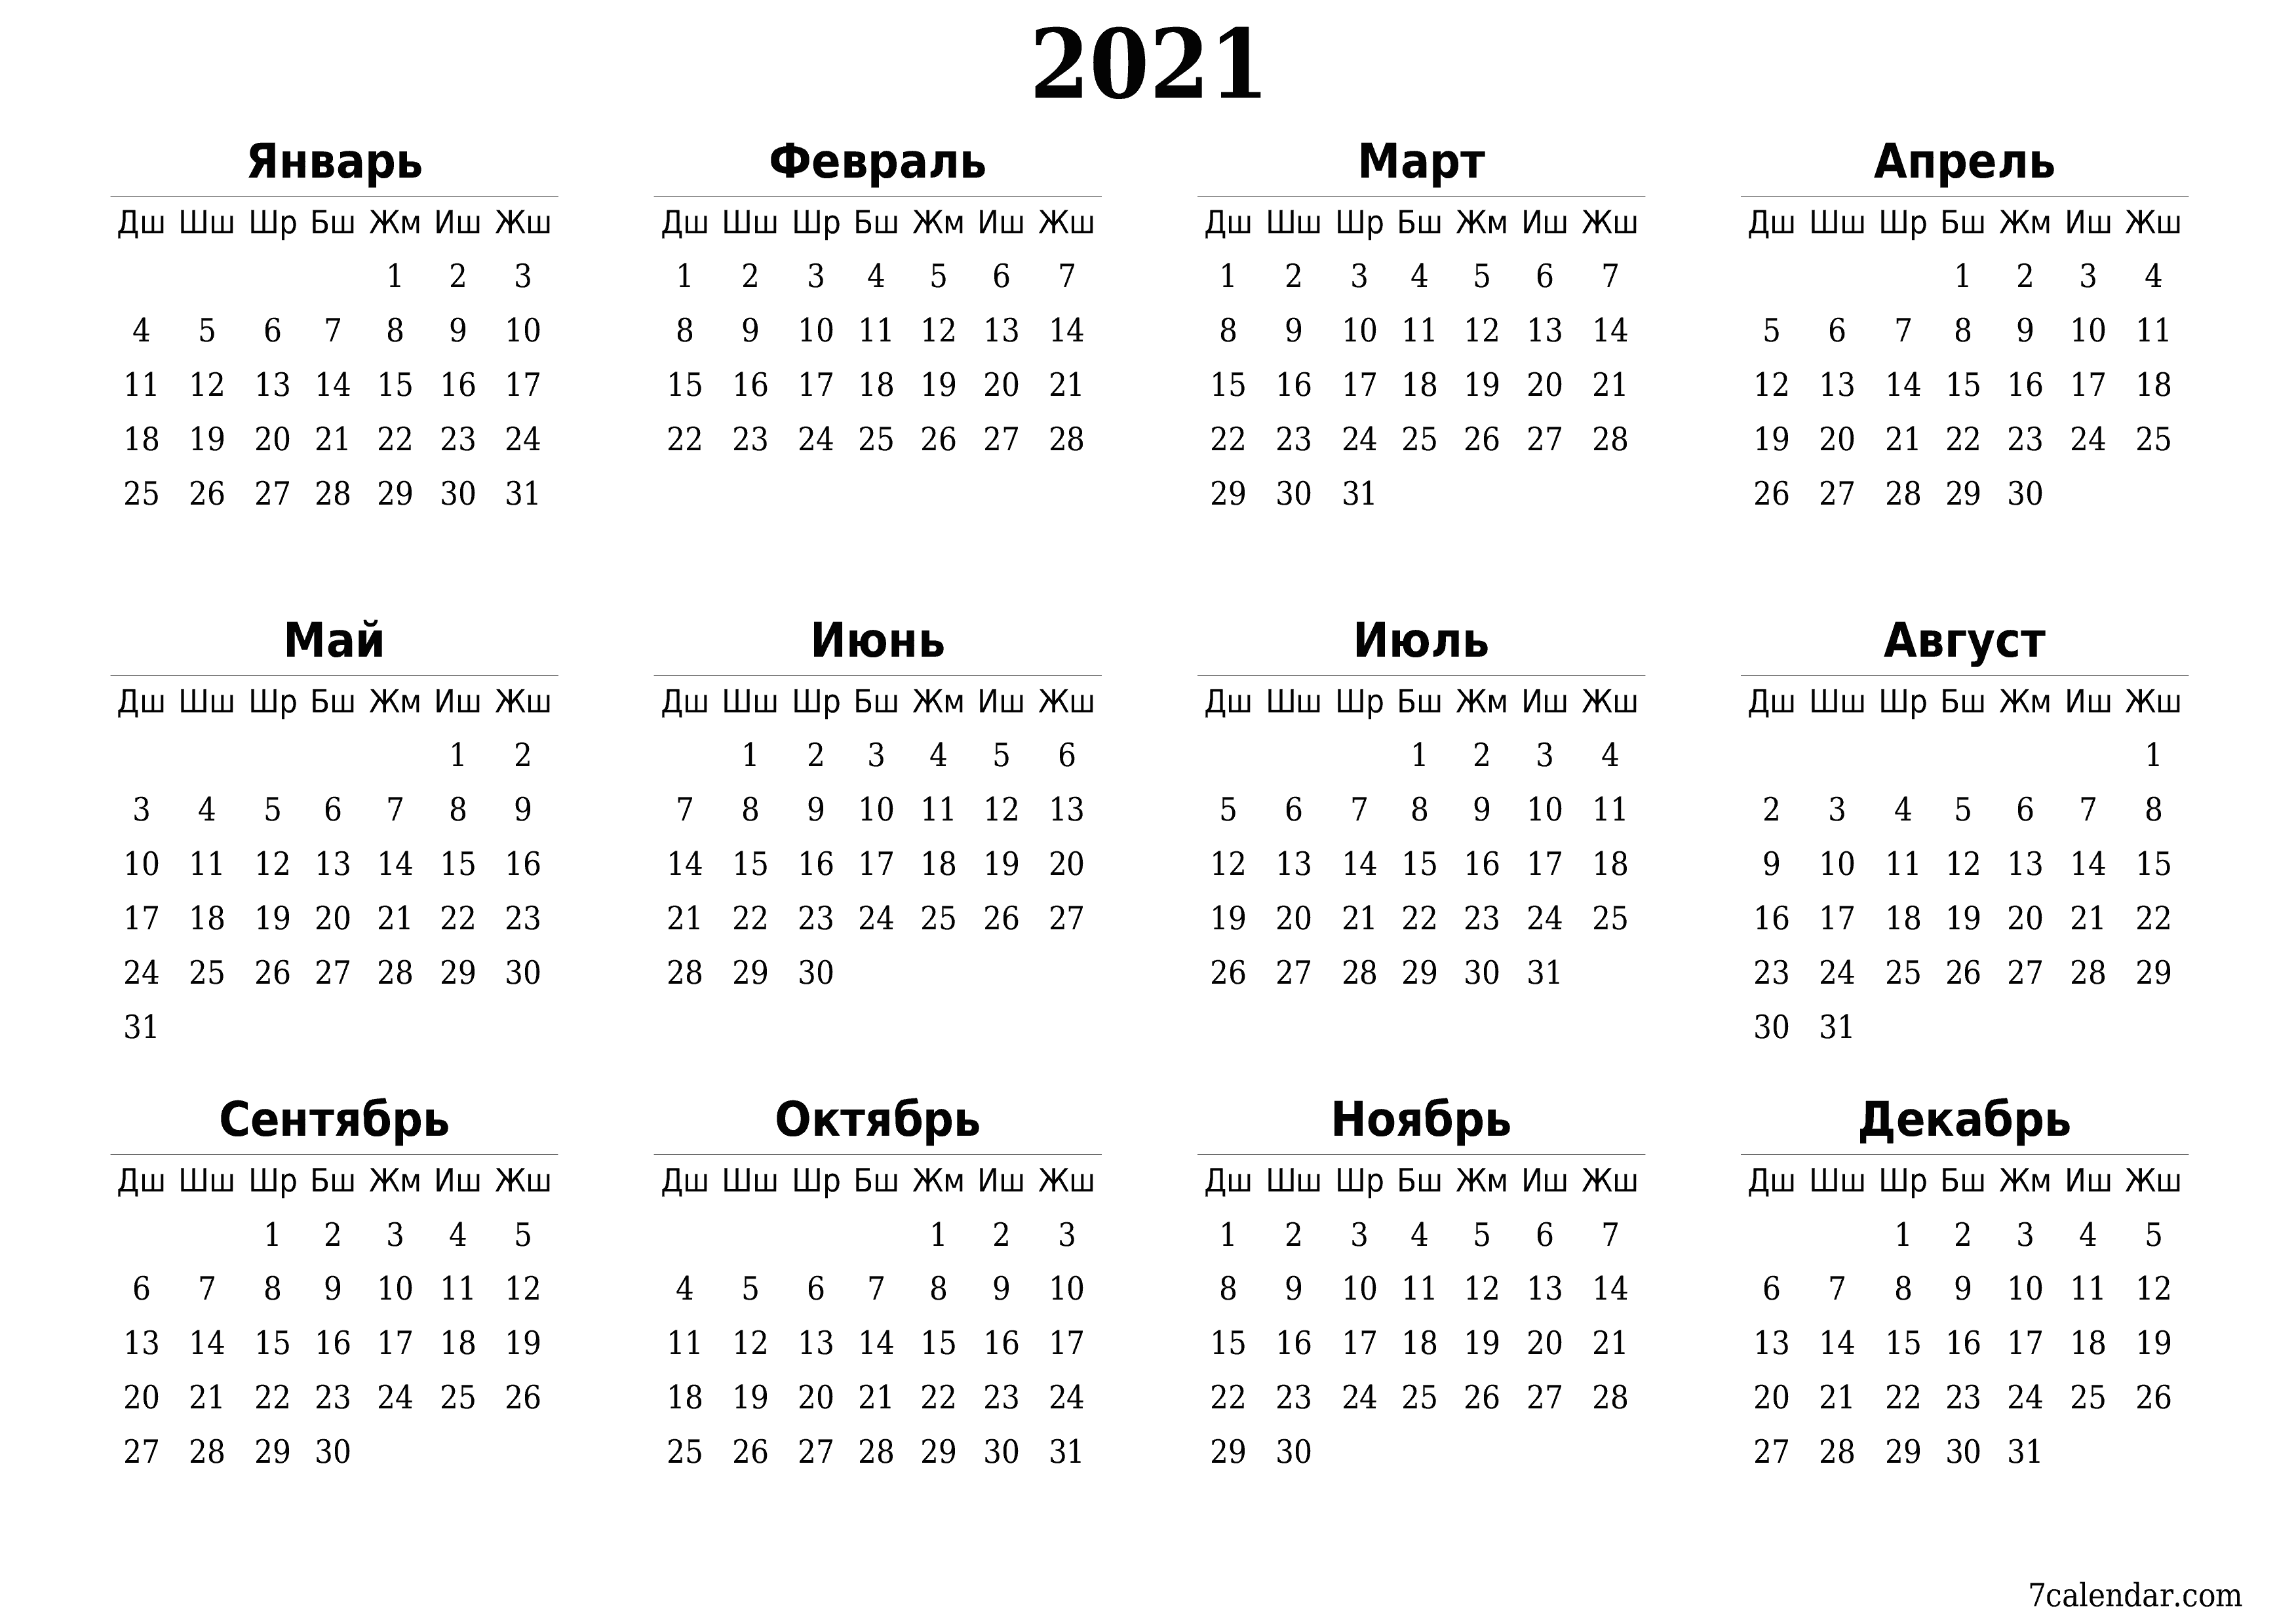 басма ь дубал ы шаблон акысыз ьгоризонталдуу Жыл сайын календар Бирдин айы (Фев) 2021